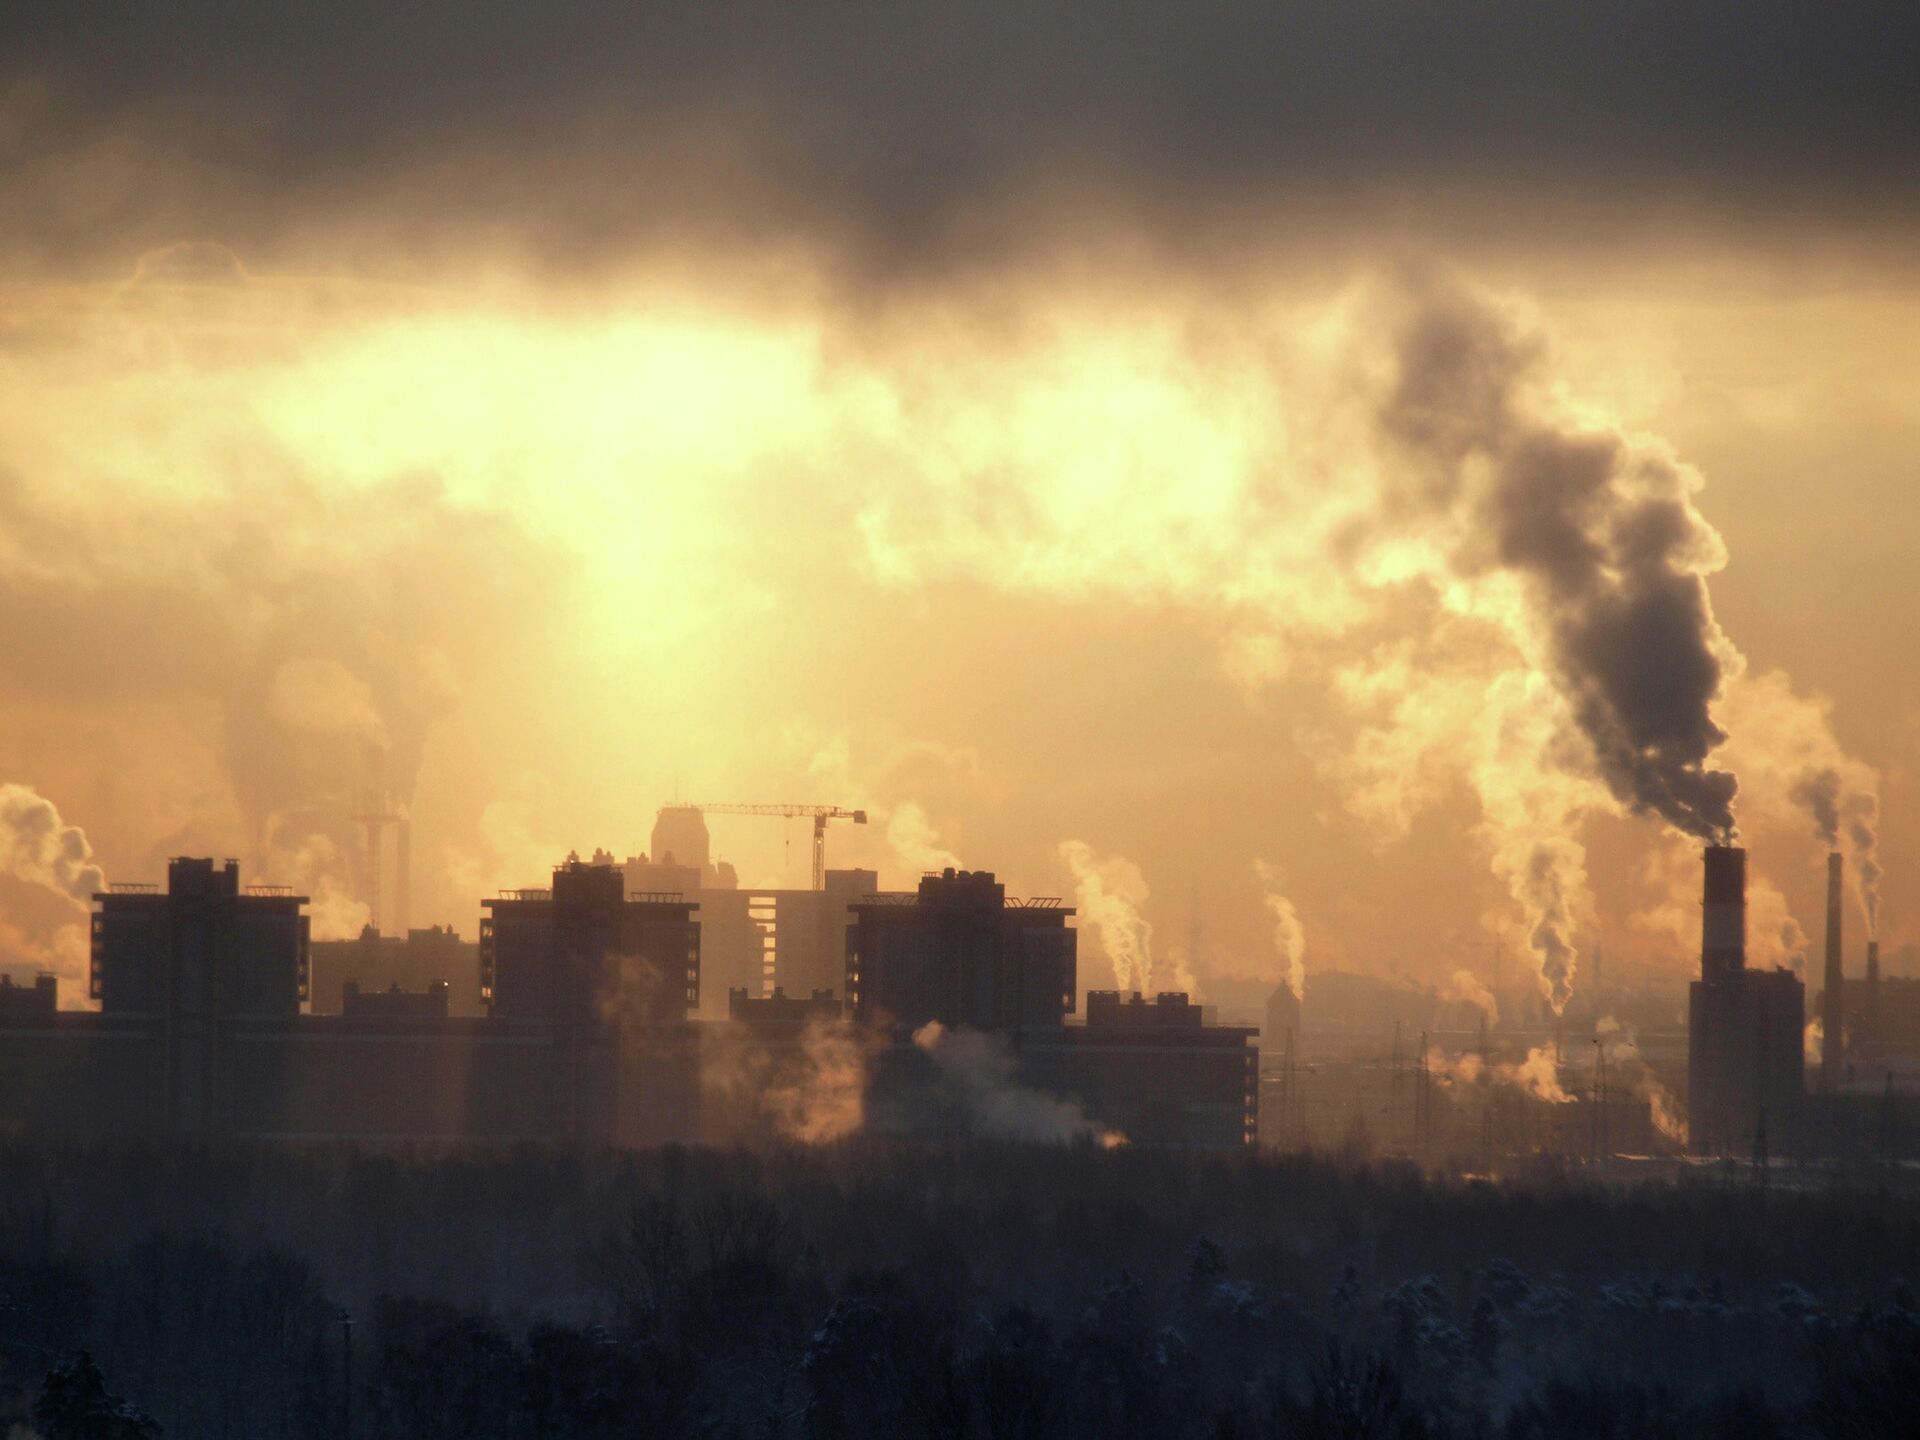 Ташкент загрязнение. Загрязнение воздуха. Загрязненный воздух в городе. Смог в городе. Выбросы заводов в атмосферу.